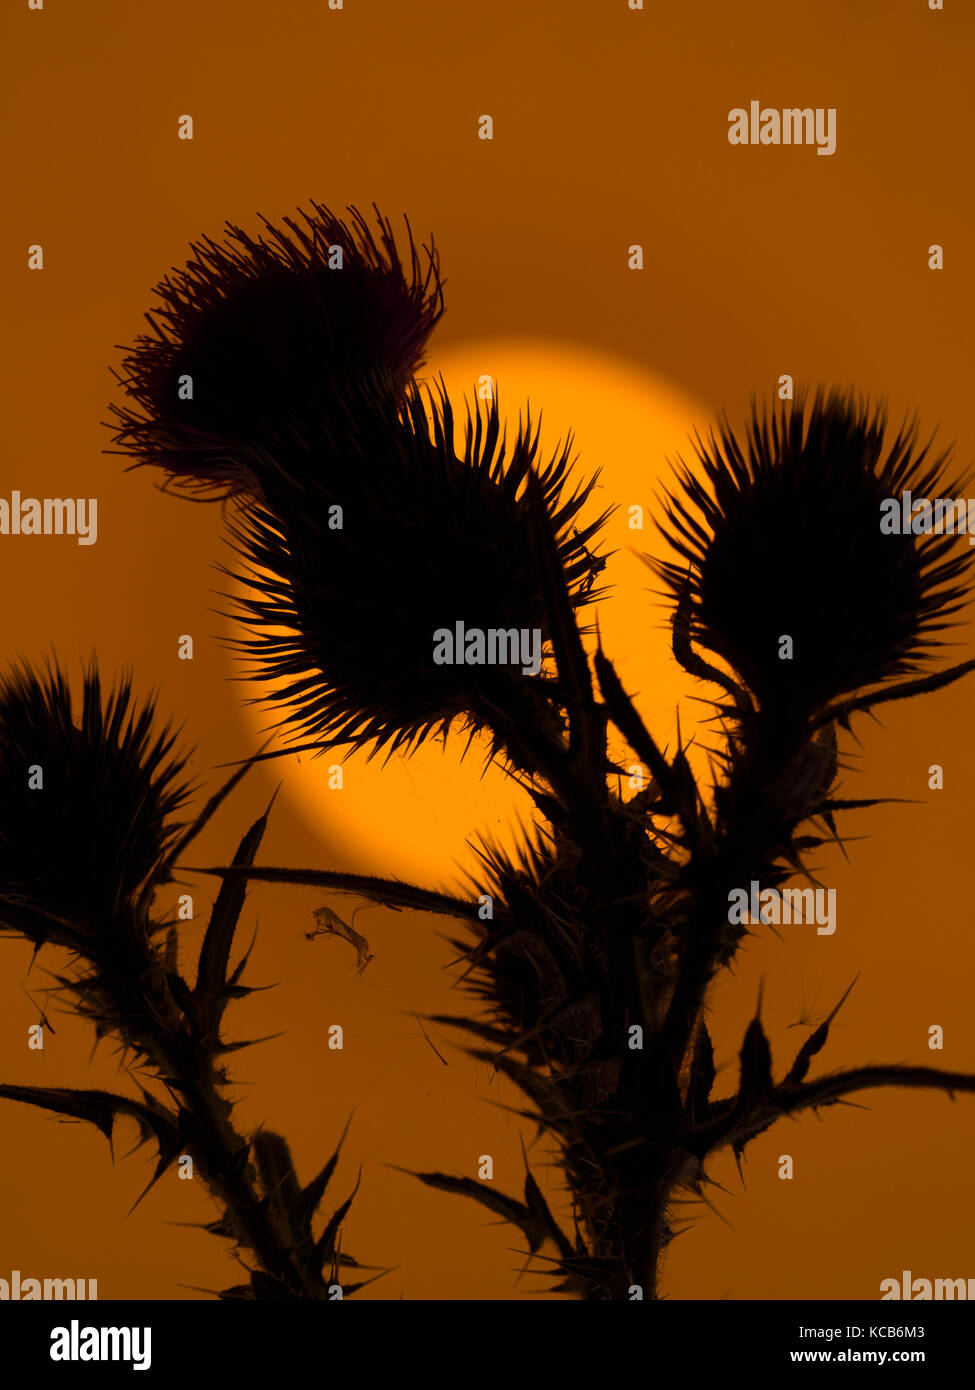 Orecchio di tuono cirsium vulgare o toro thistle, o comune thistle al tramonto Foto Stock